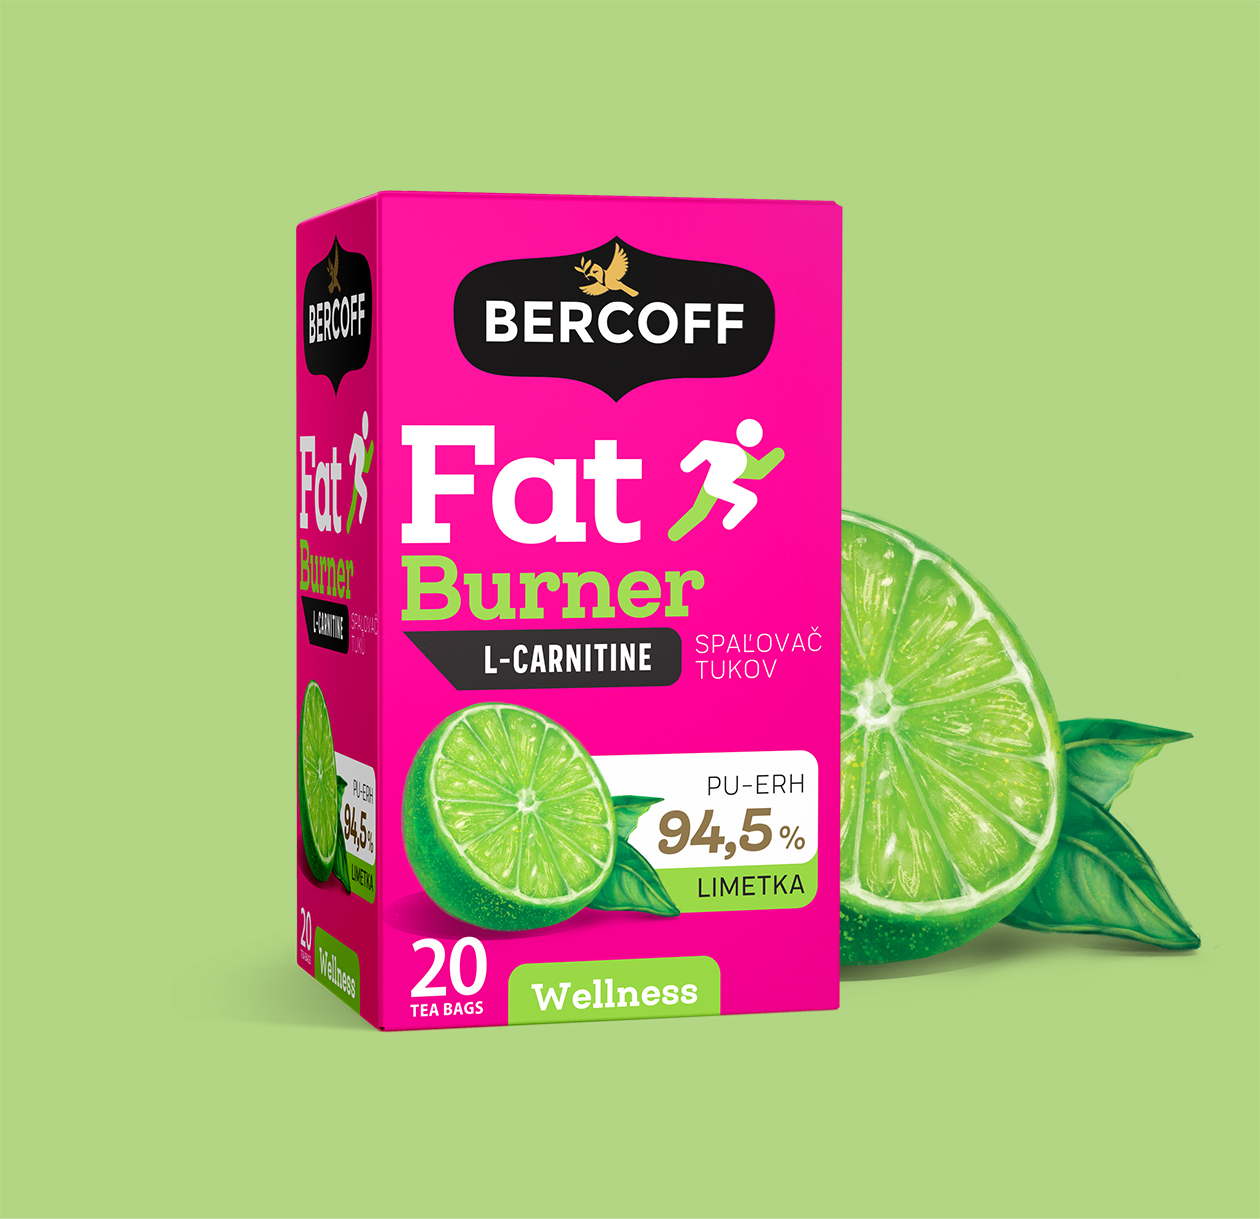 bercoff wellness packaging 04